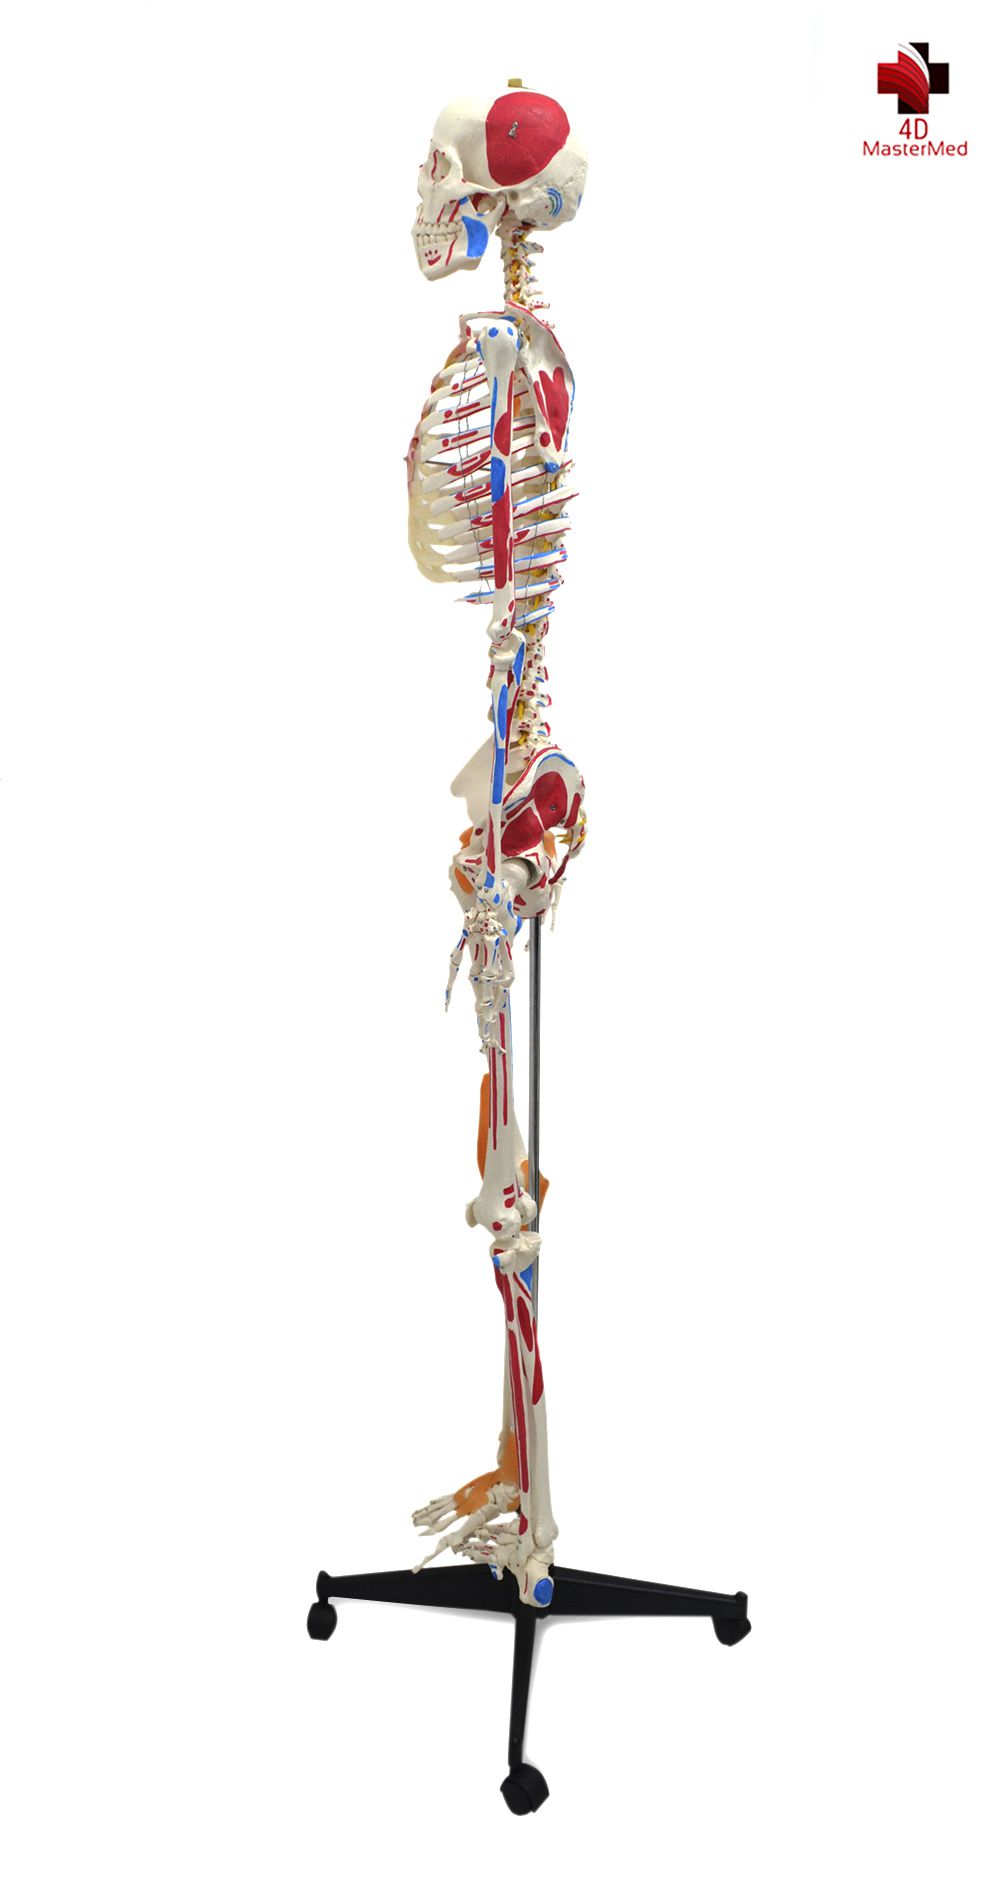 Anatomia do Esqueleto Humano 1,80 articulado com ligamentos e músculos - 4D MasterMed